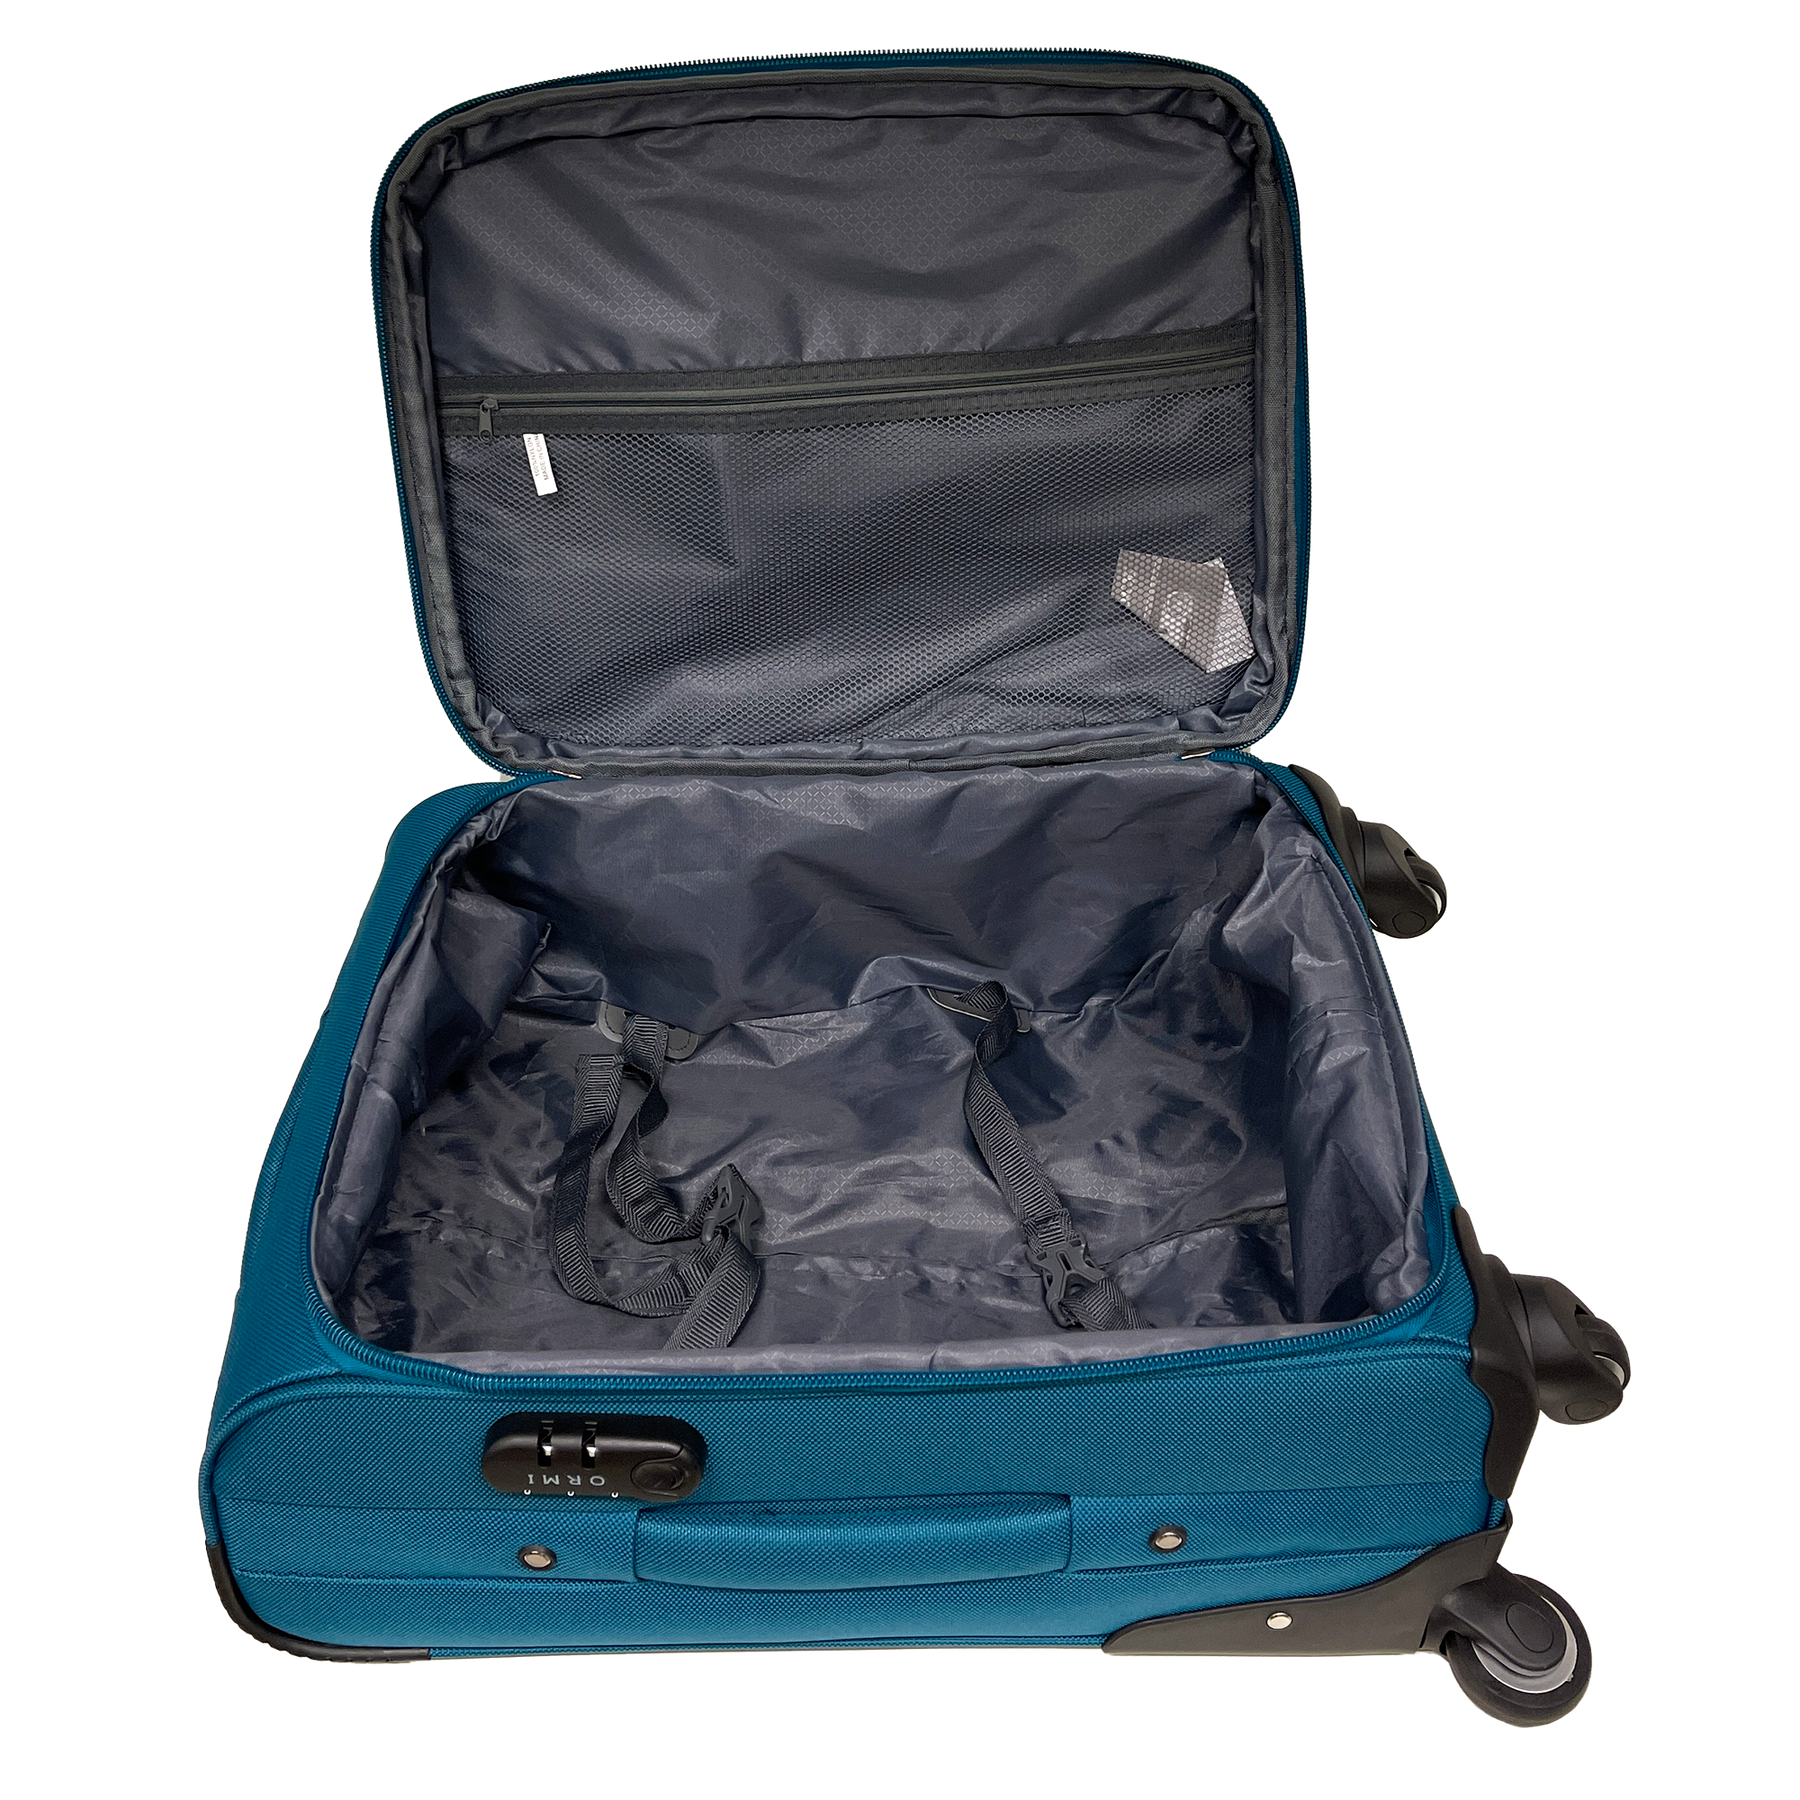 Zestaw walizek Ormi półtwarda, rozszerzana bagaż podręczny + średnia walizka - Materiał antywstrząsowy i wytrzymały